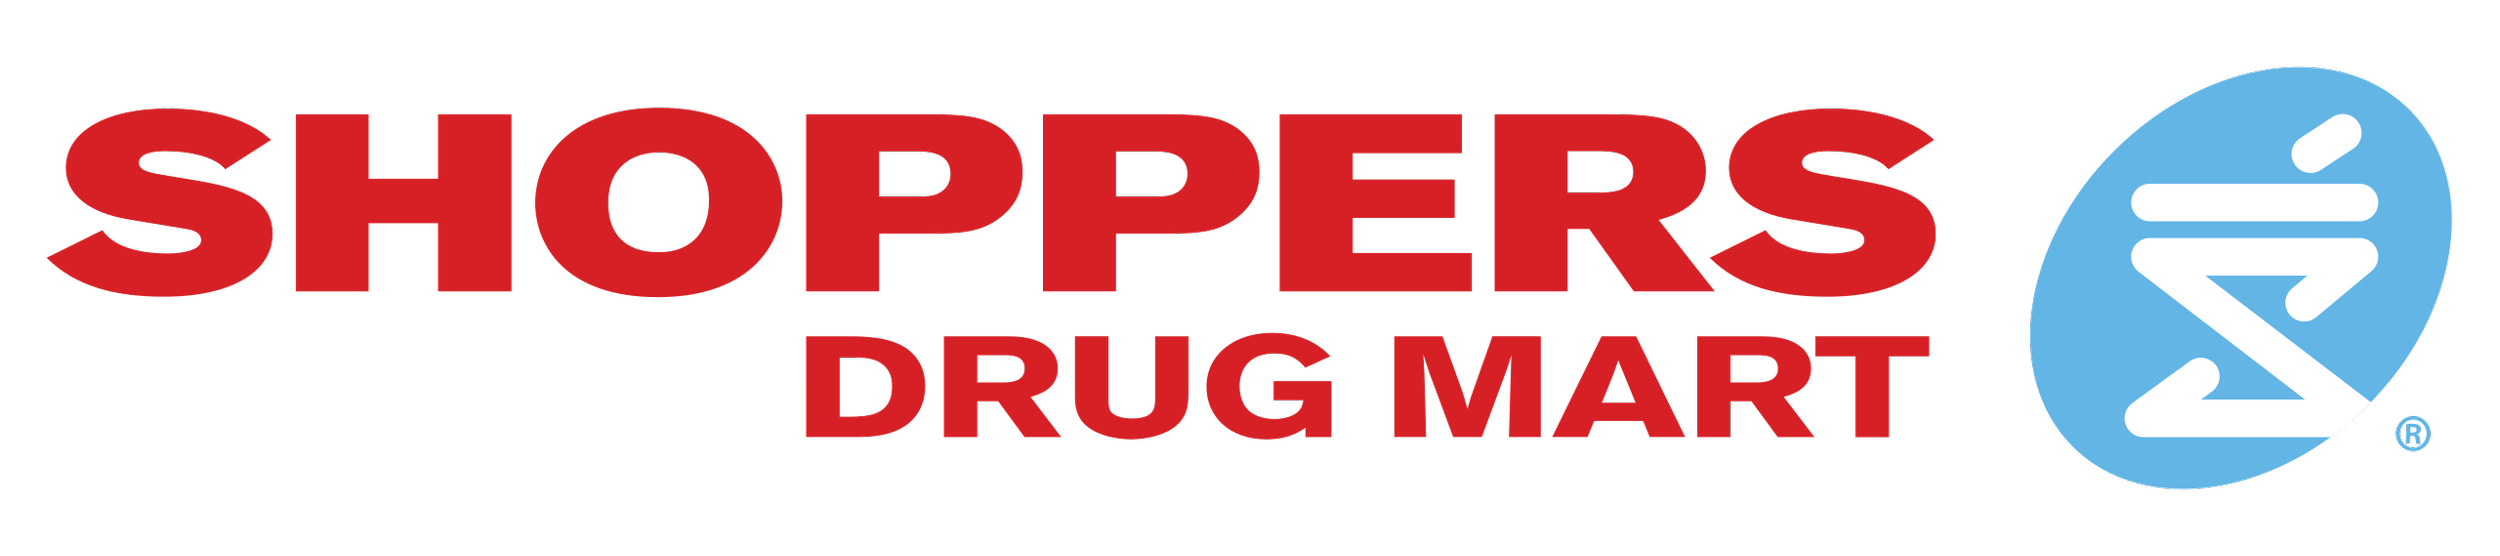 Shoppers Drug Mart logo.png